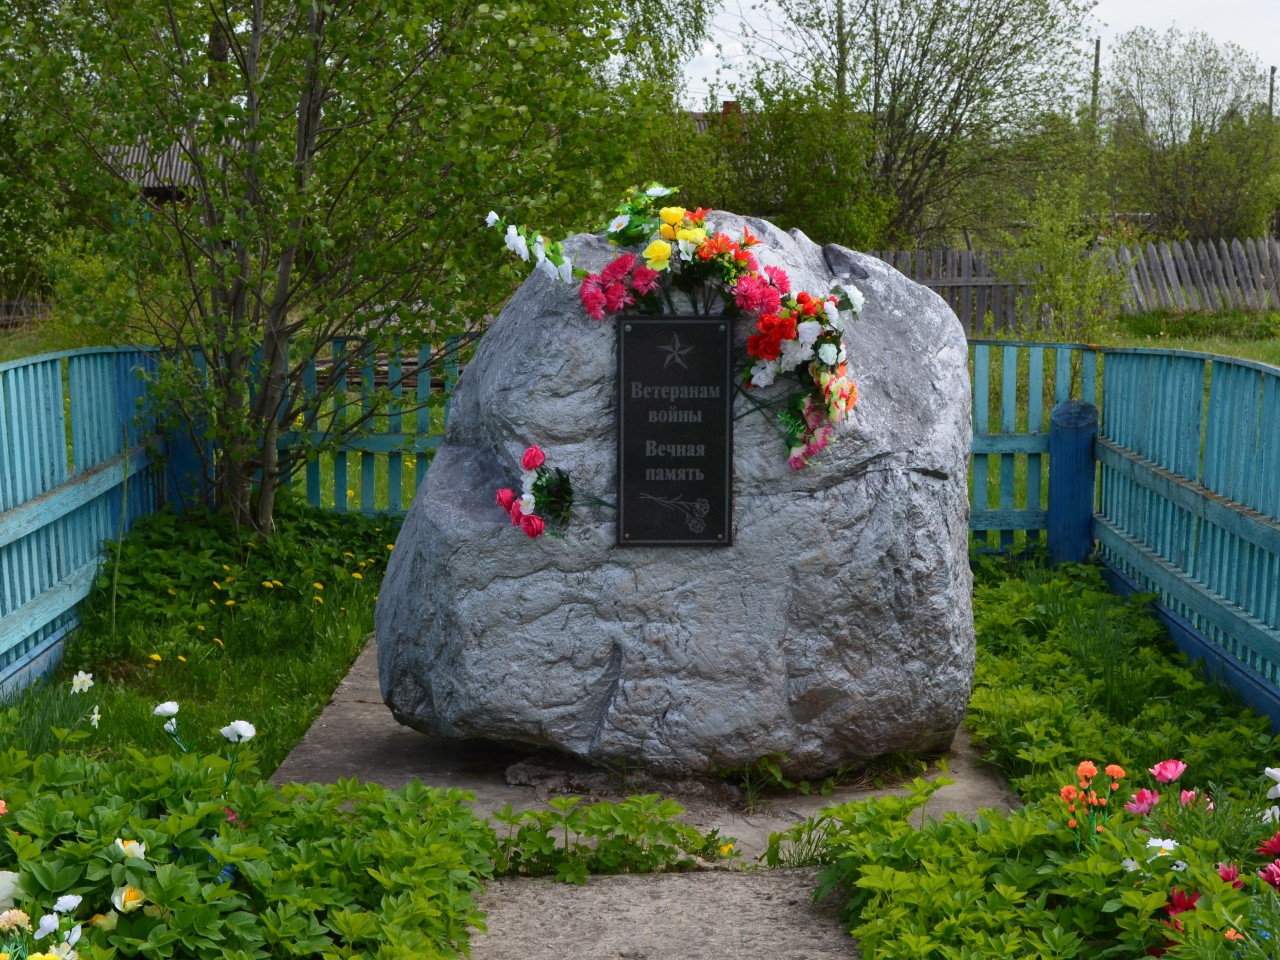 Памятник "Ветеранам войны" 1